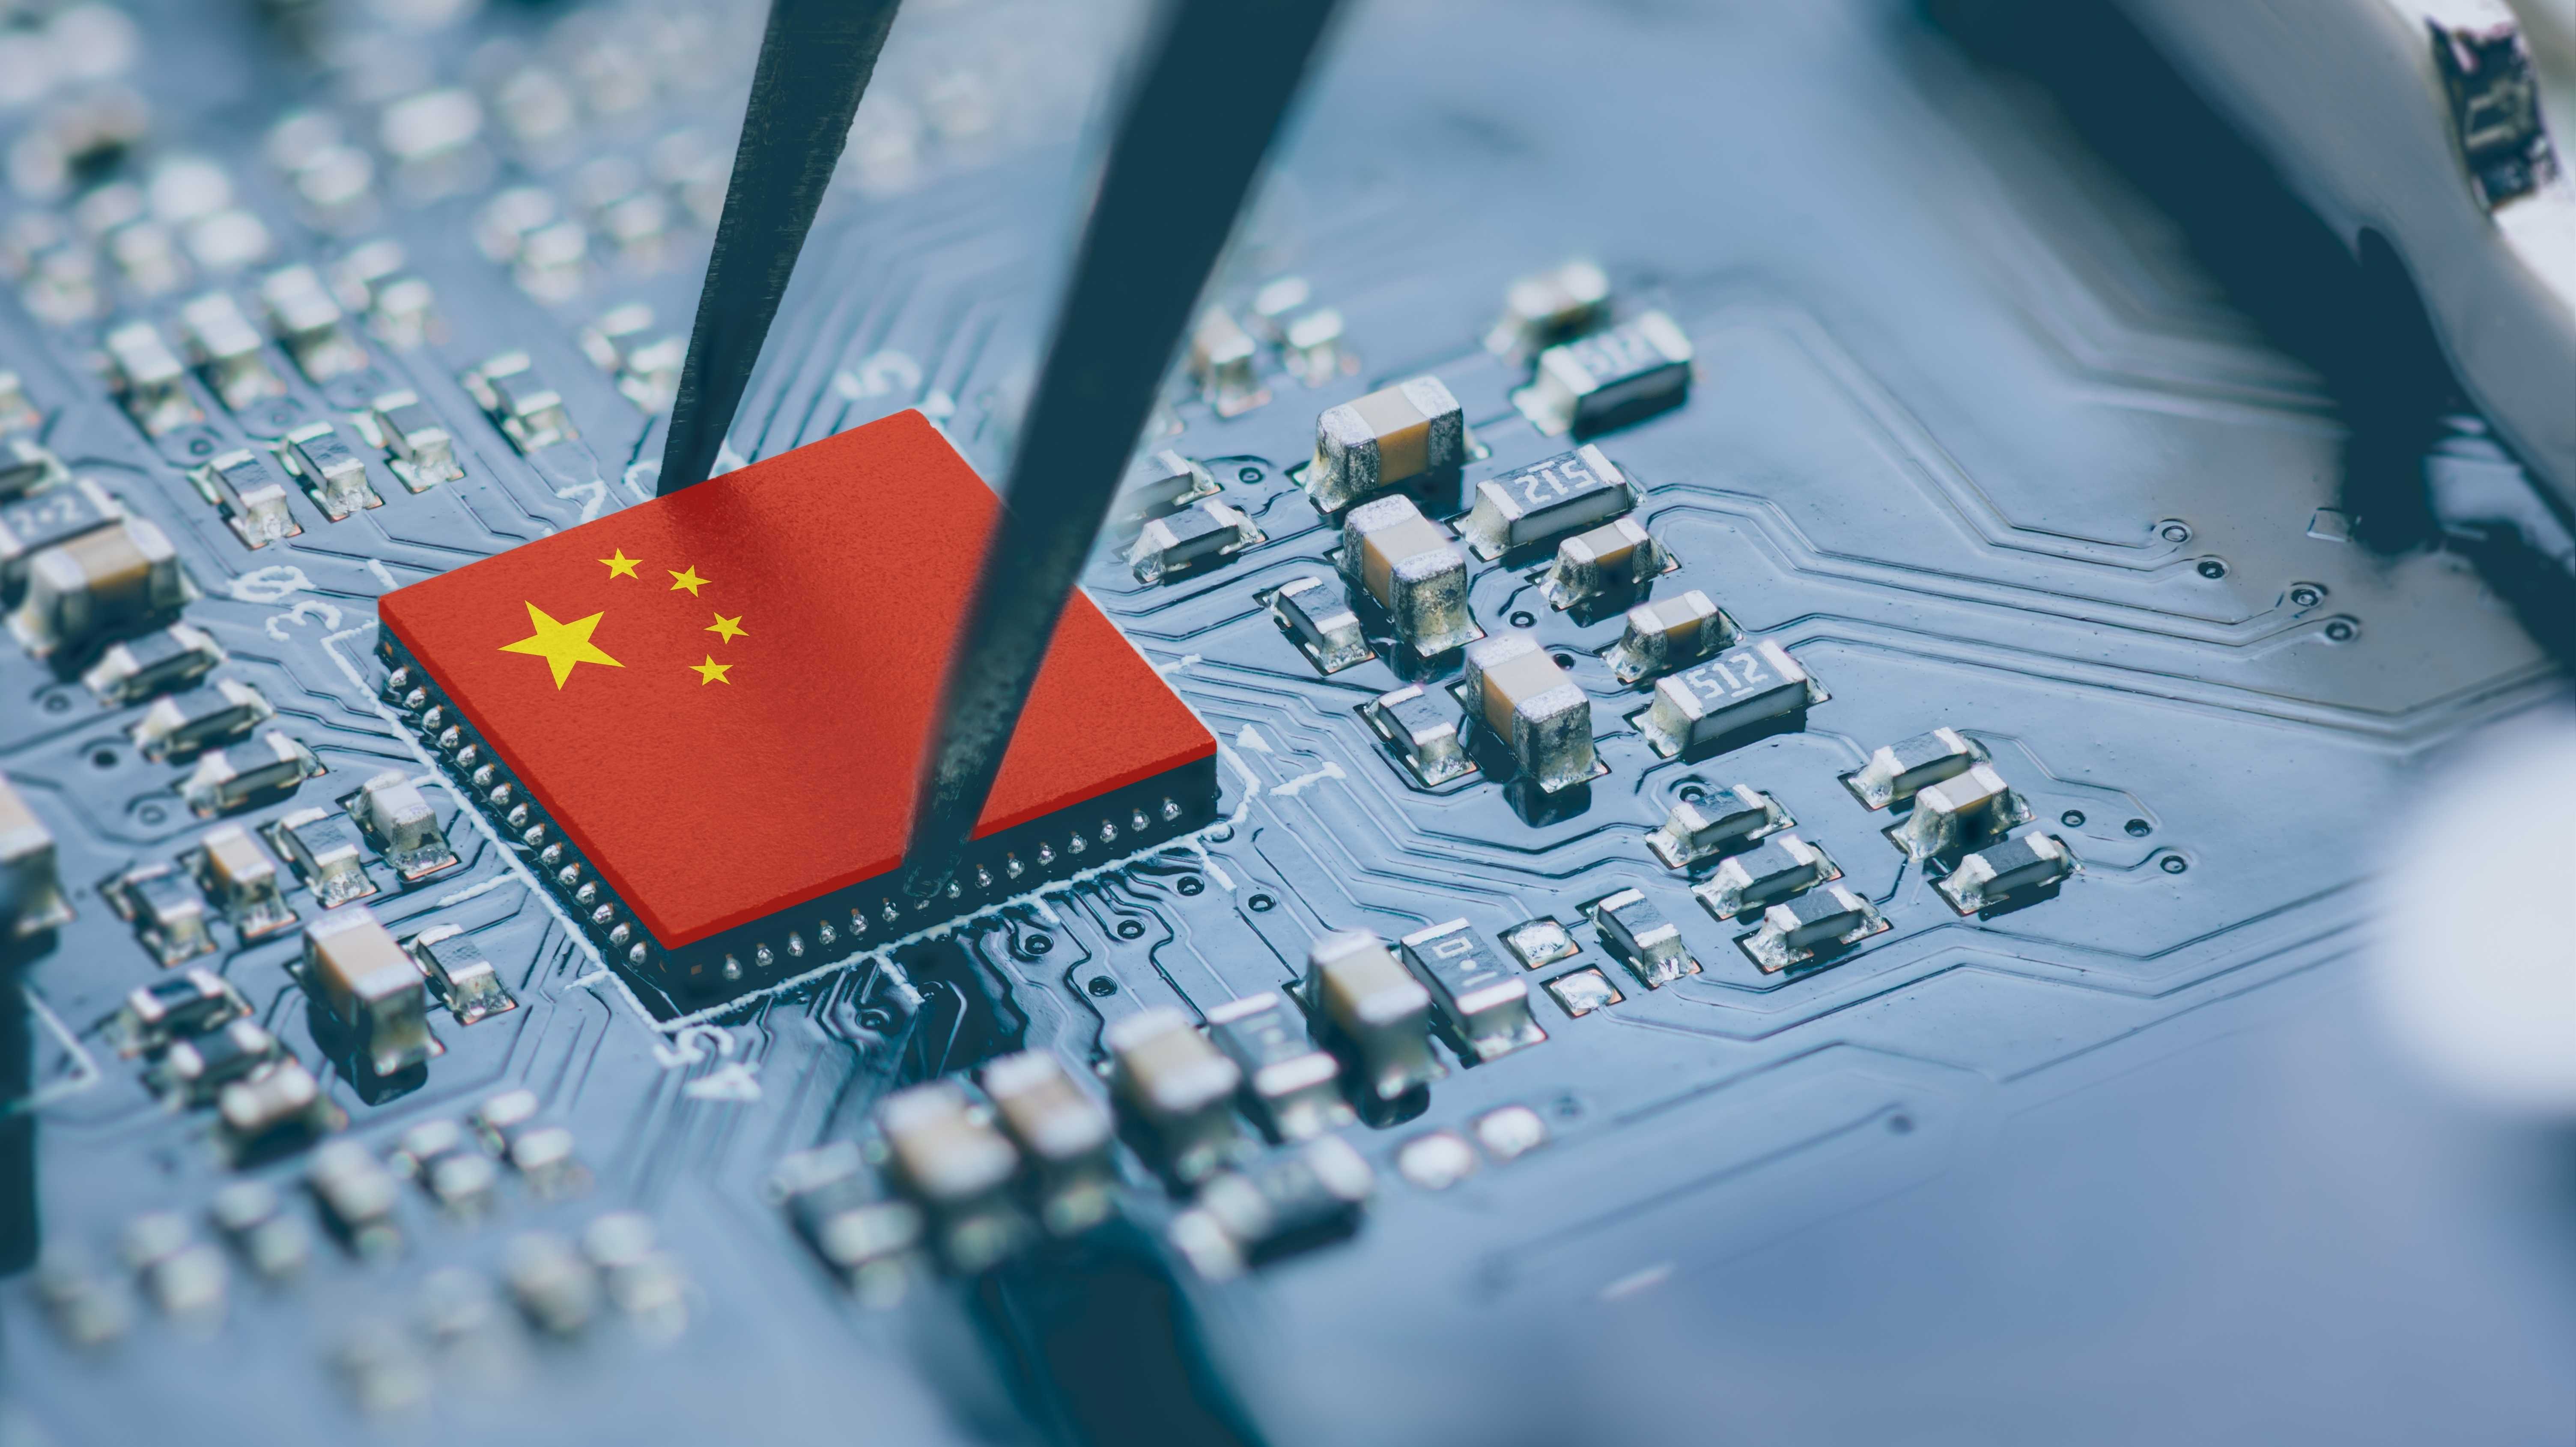 Flagge von China auf Mikrochip - Strategie gegen US-Exportbeschränkungen